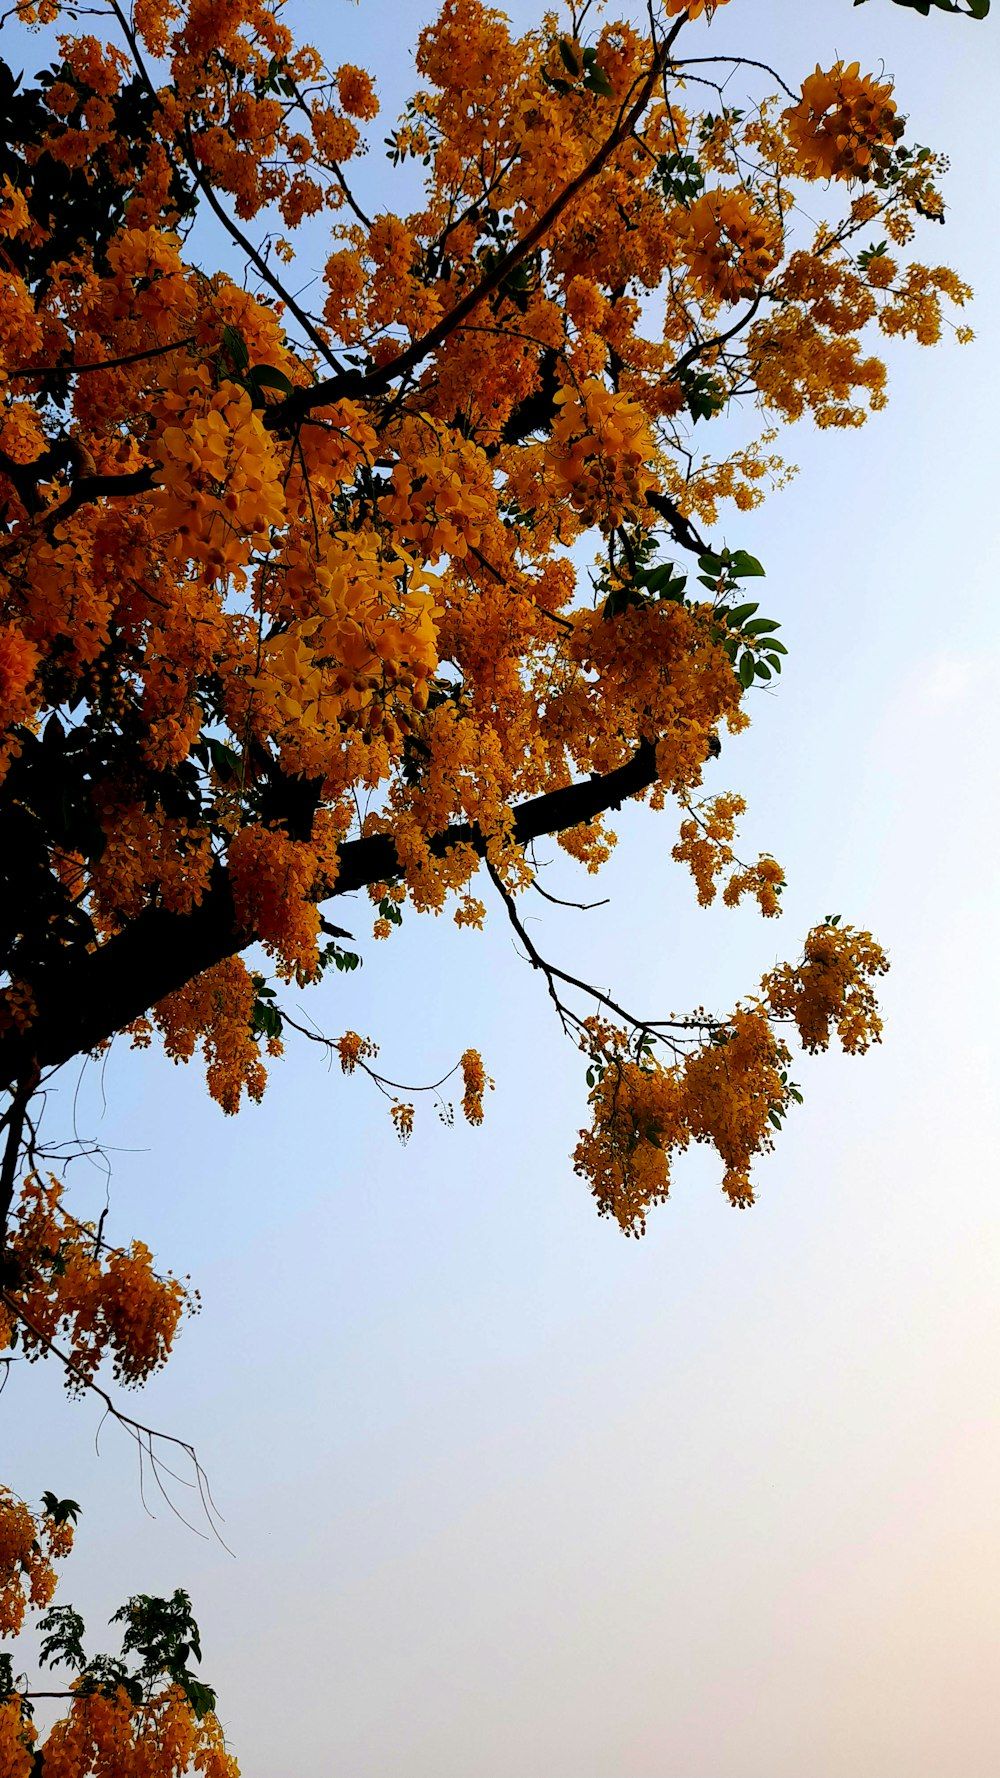  Baum Hintergrundbild 1000x1778. Foto zum Thema Ein baum mit gelben blüten vor blauem himmel